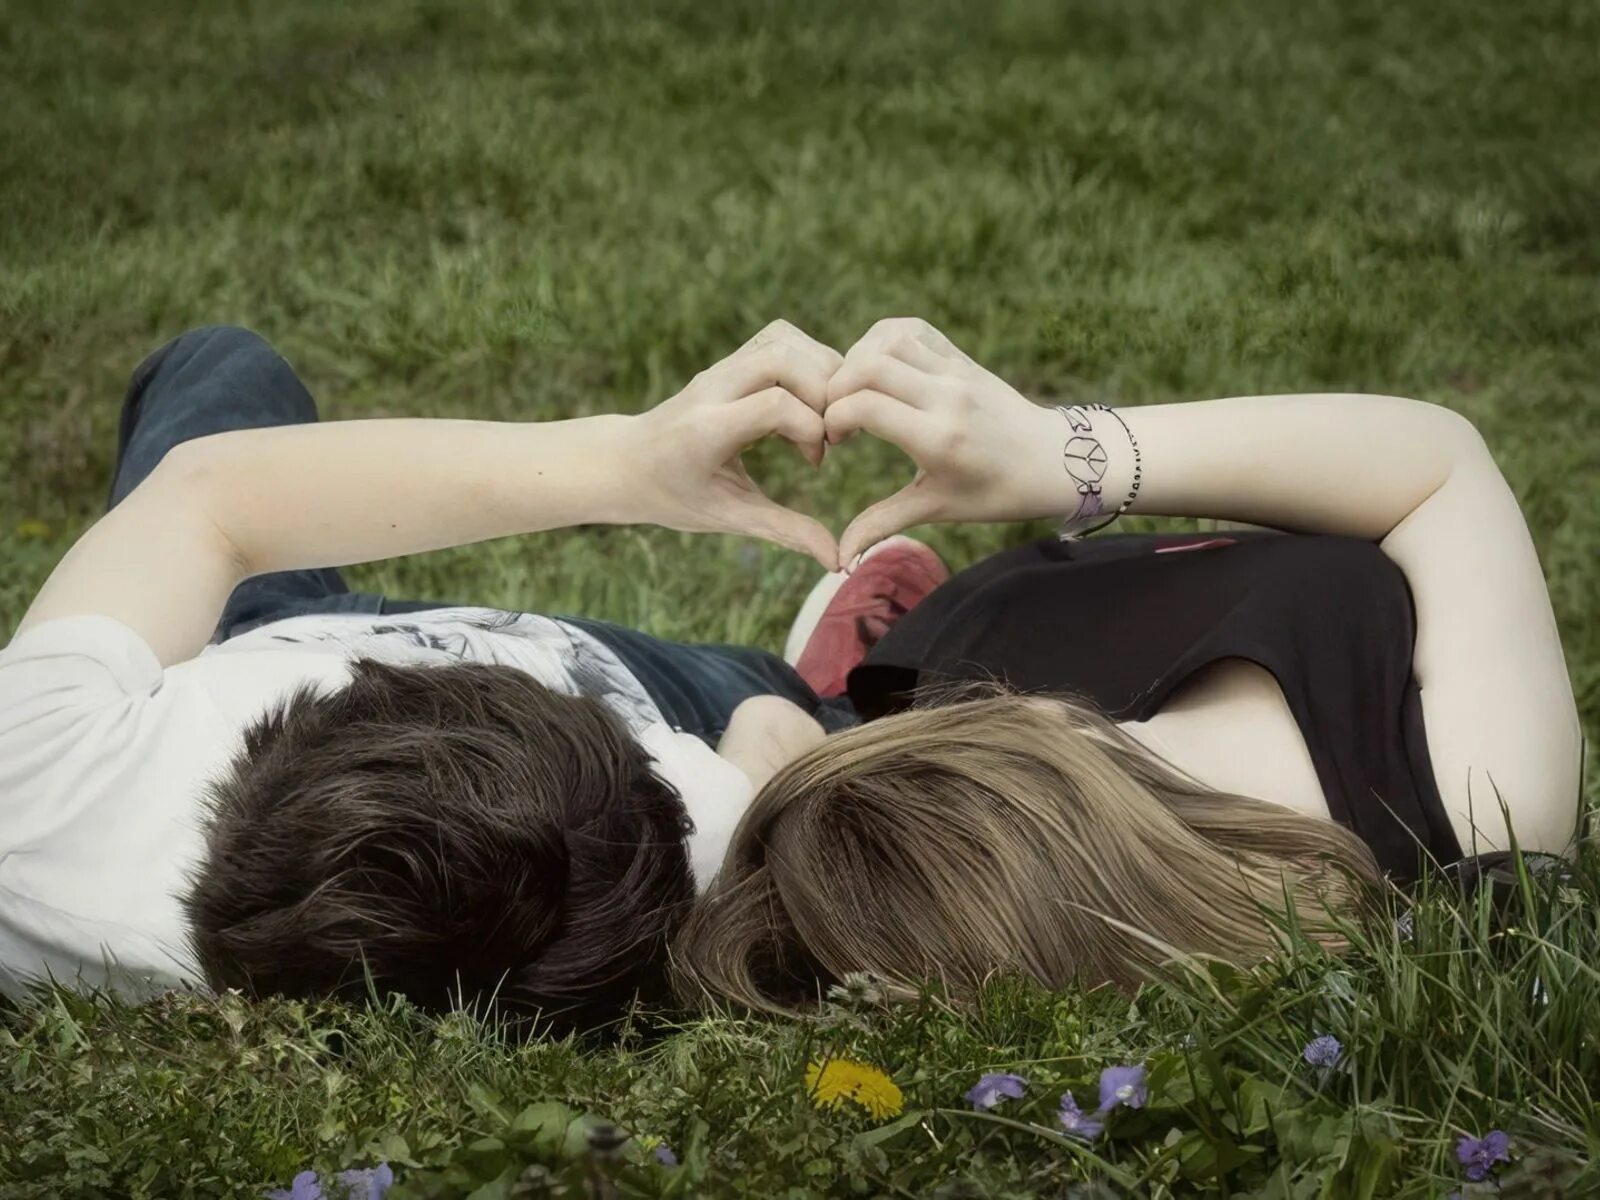 Пара влюбленных. Влюбленные лежат на траве. Подростковая влюбленность. Картинки влюбленных. День из жизни пары их первый месяц